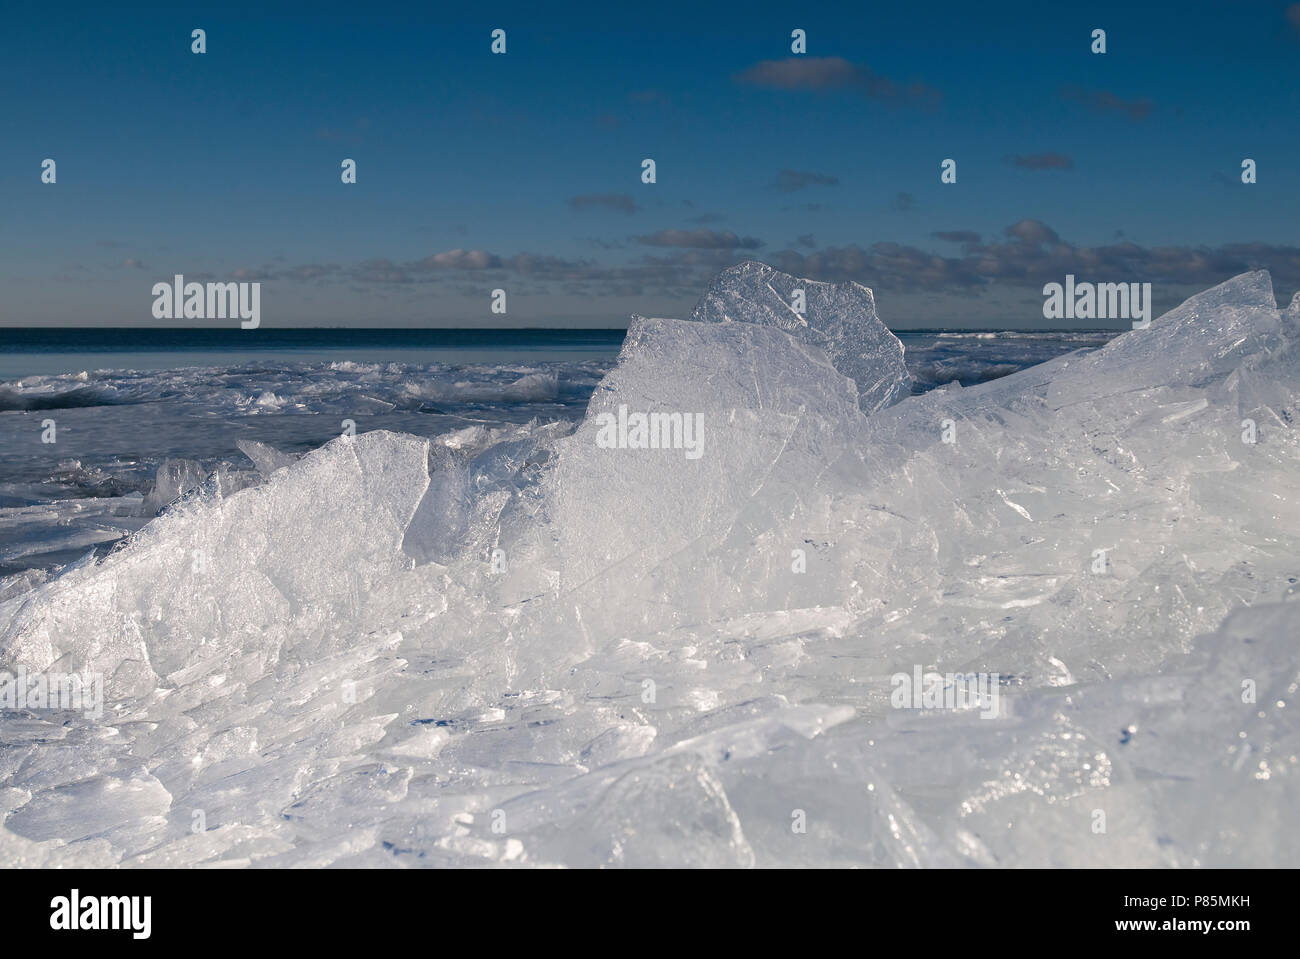 Kruiend ijs op het IJsselmeer; Ice in the IJsselmeer Stock Photo